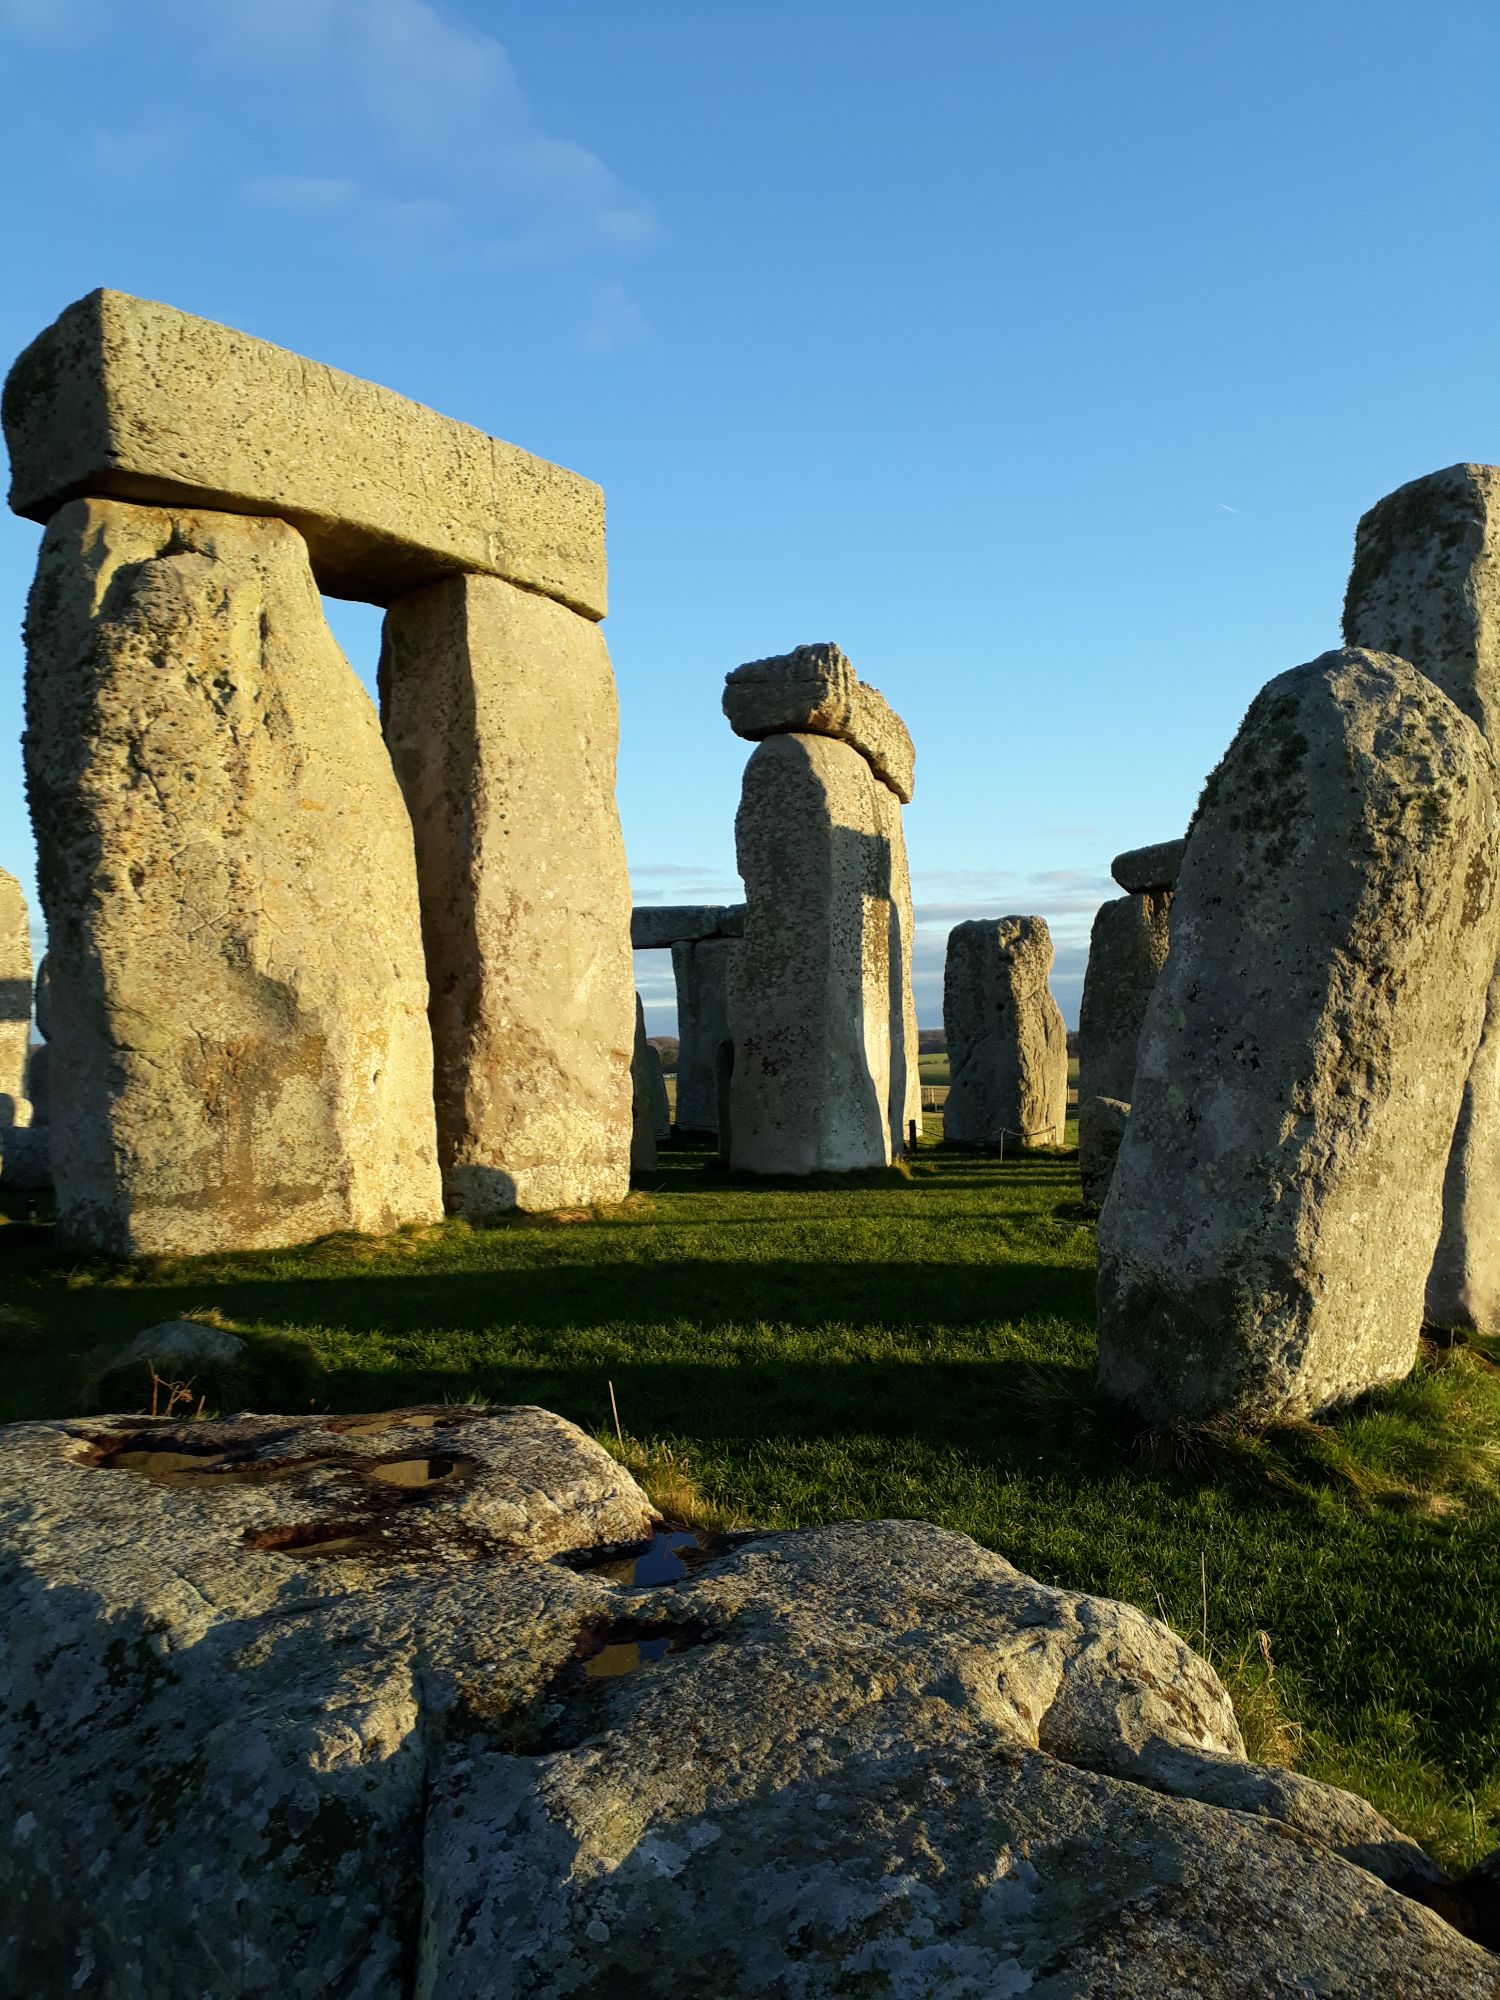 Stonehenge stones